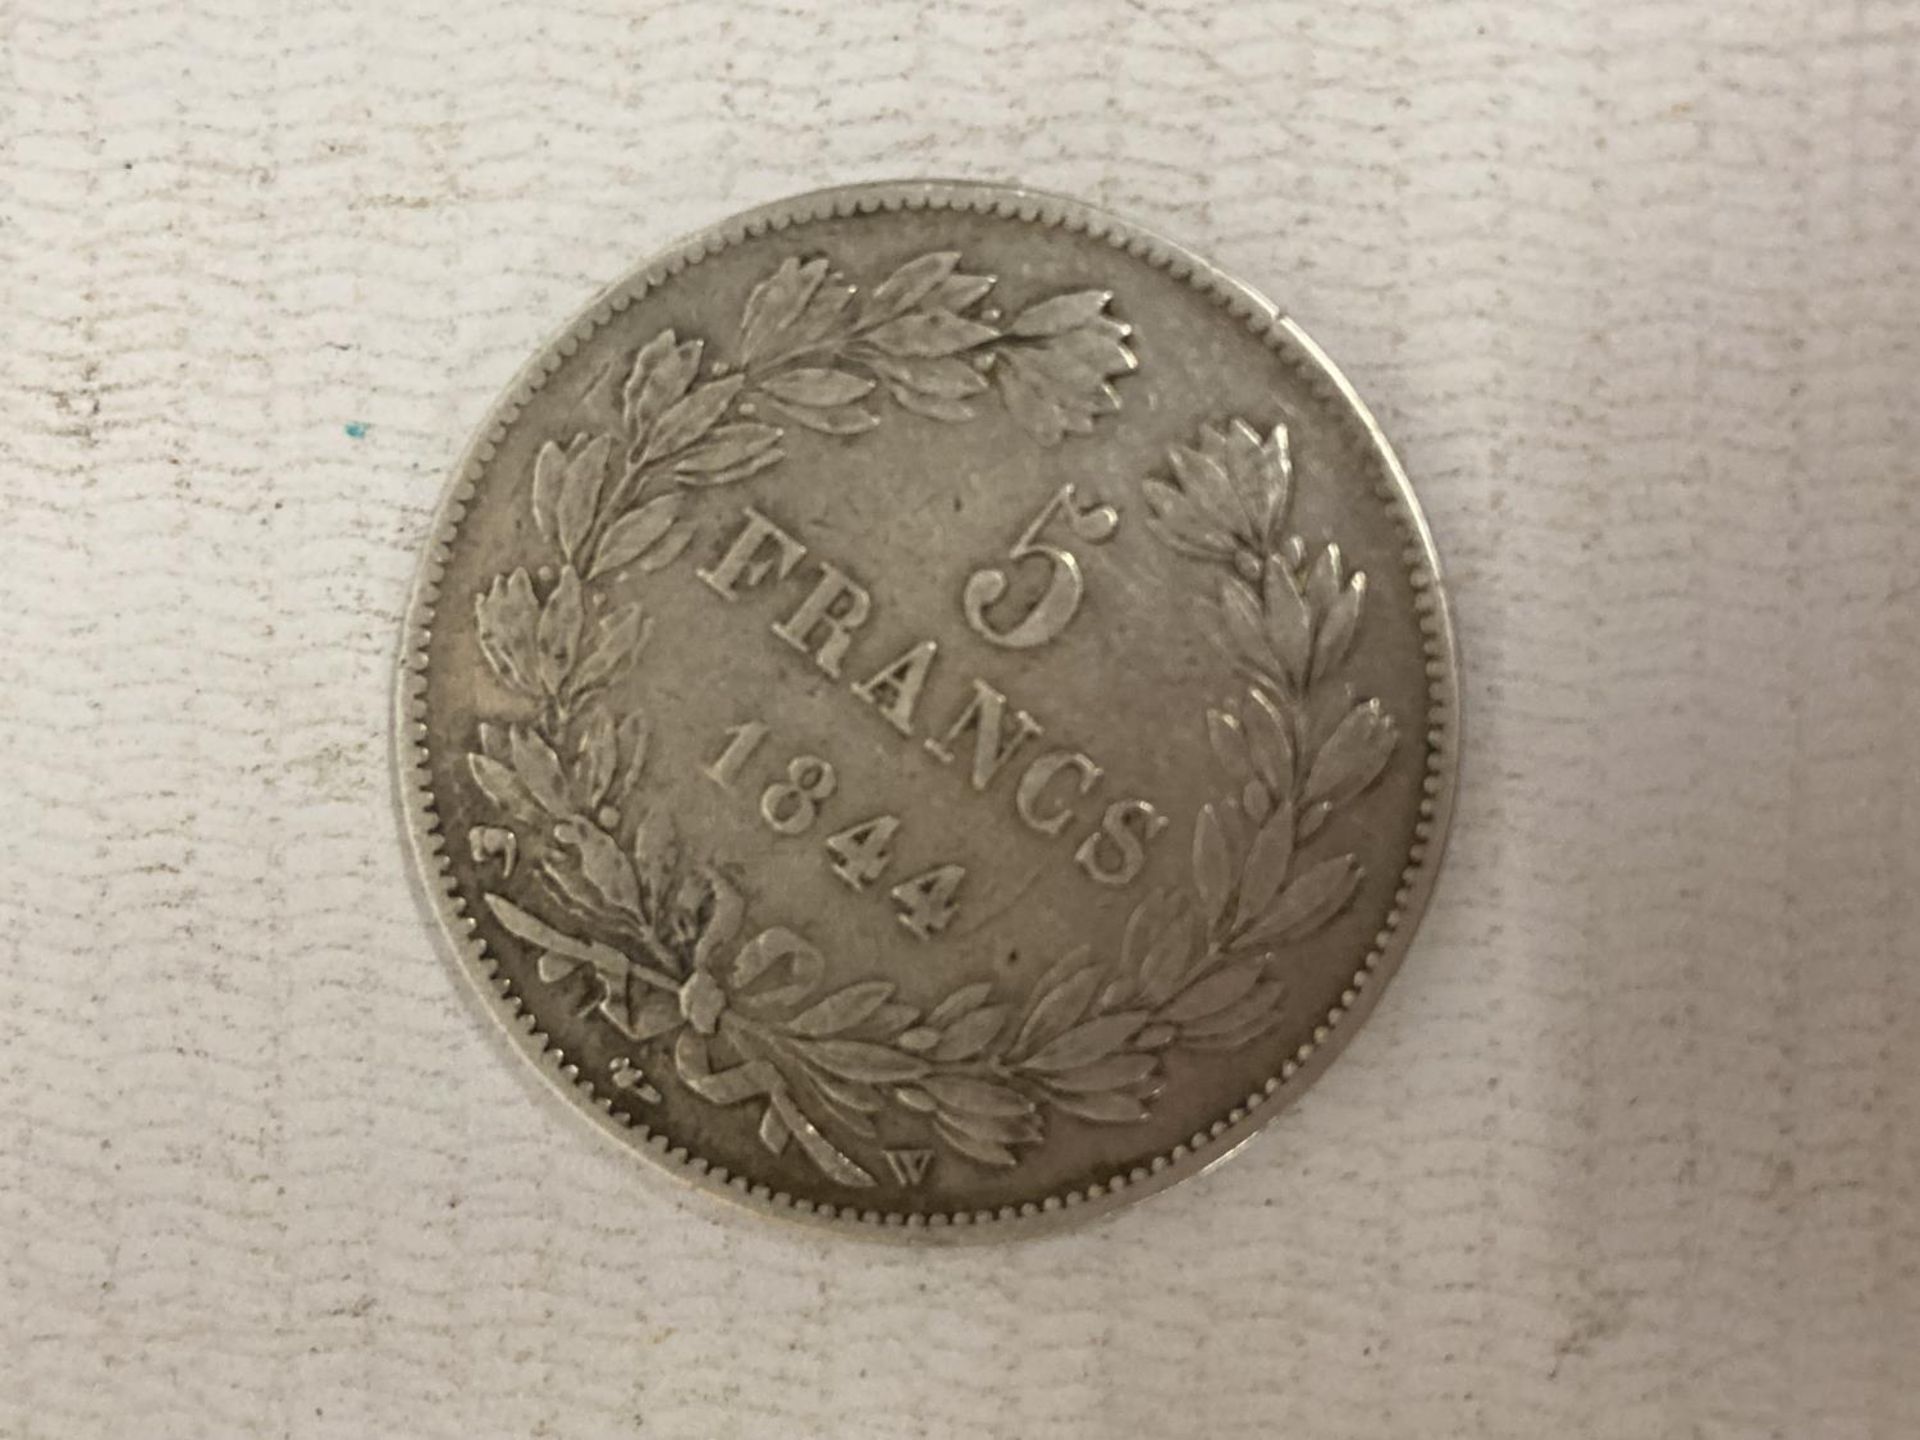 FRANCE , 1844 SILVER 5 FRANCS COIN , FINE CONDITION - Bild 2 aus 2